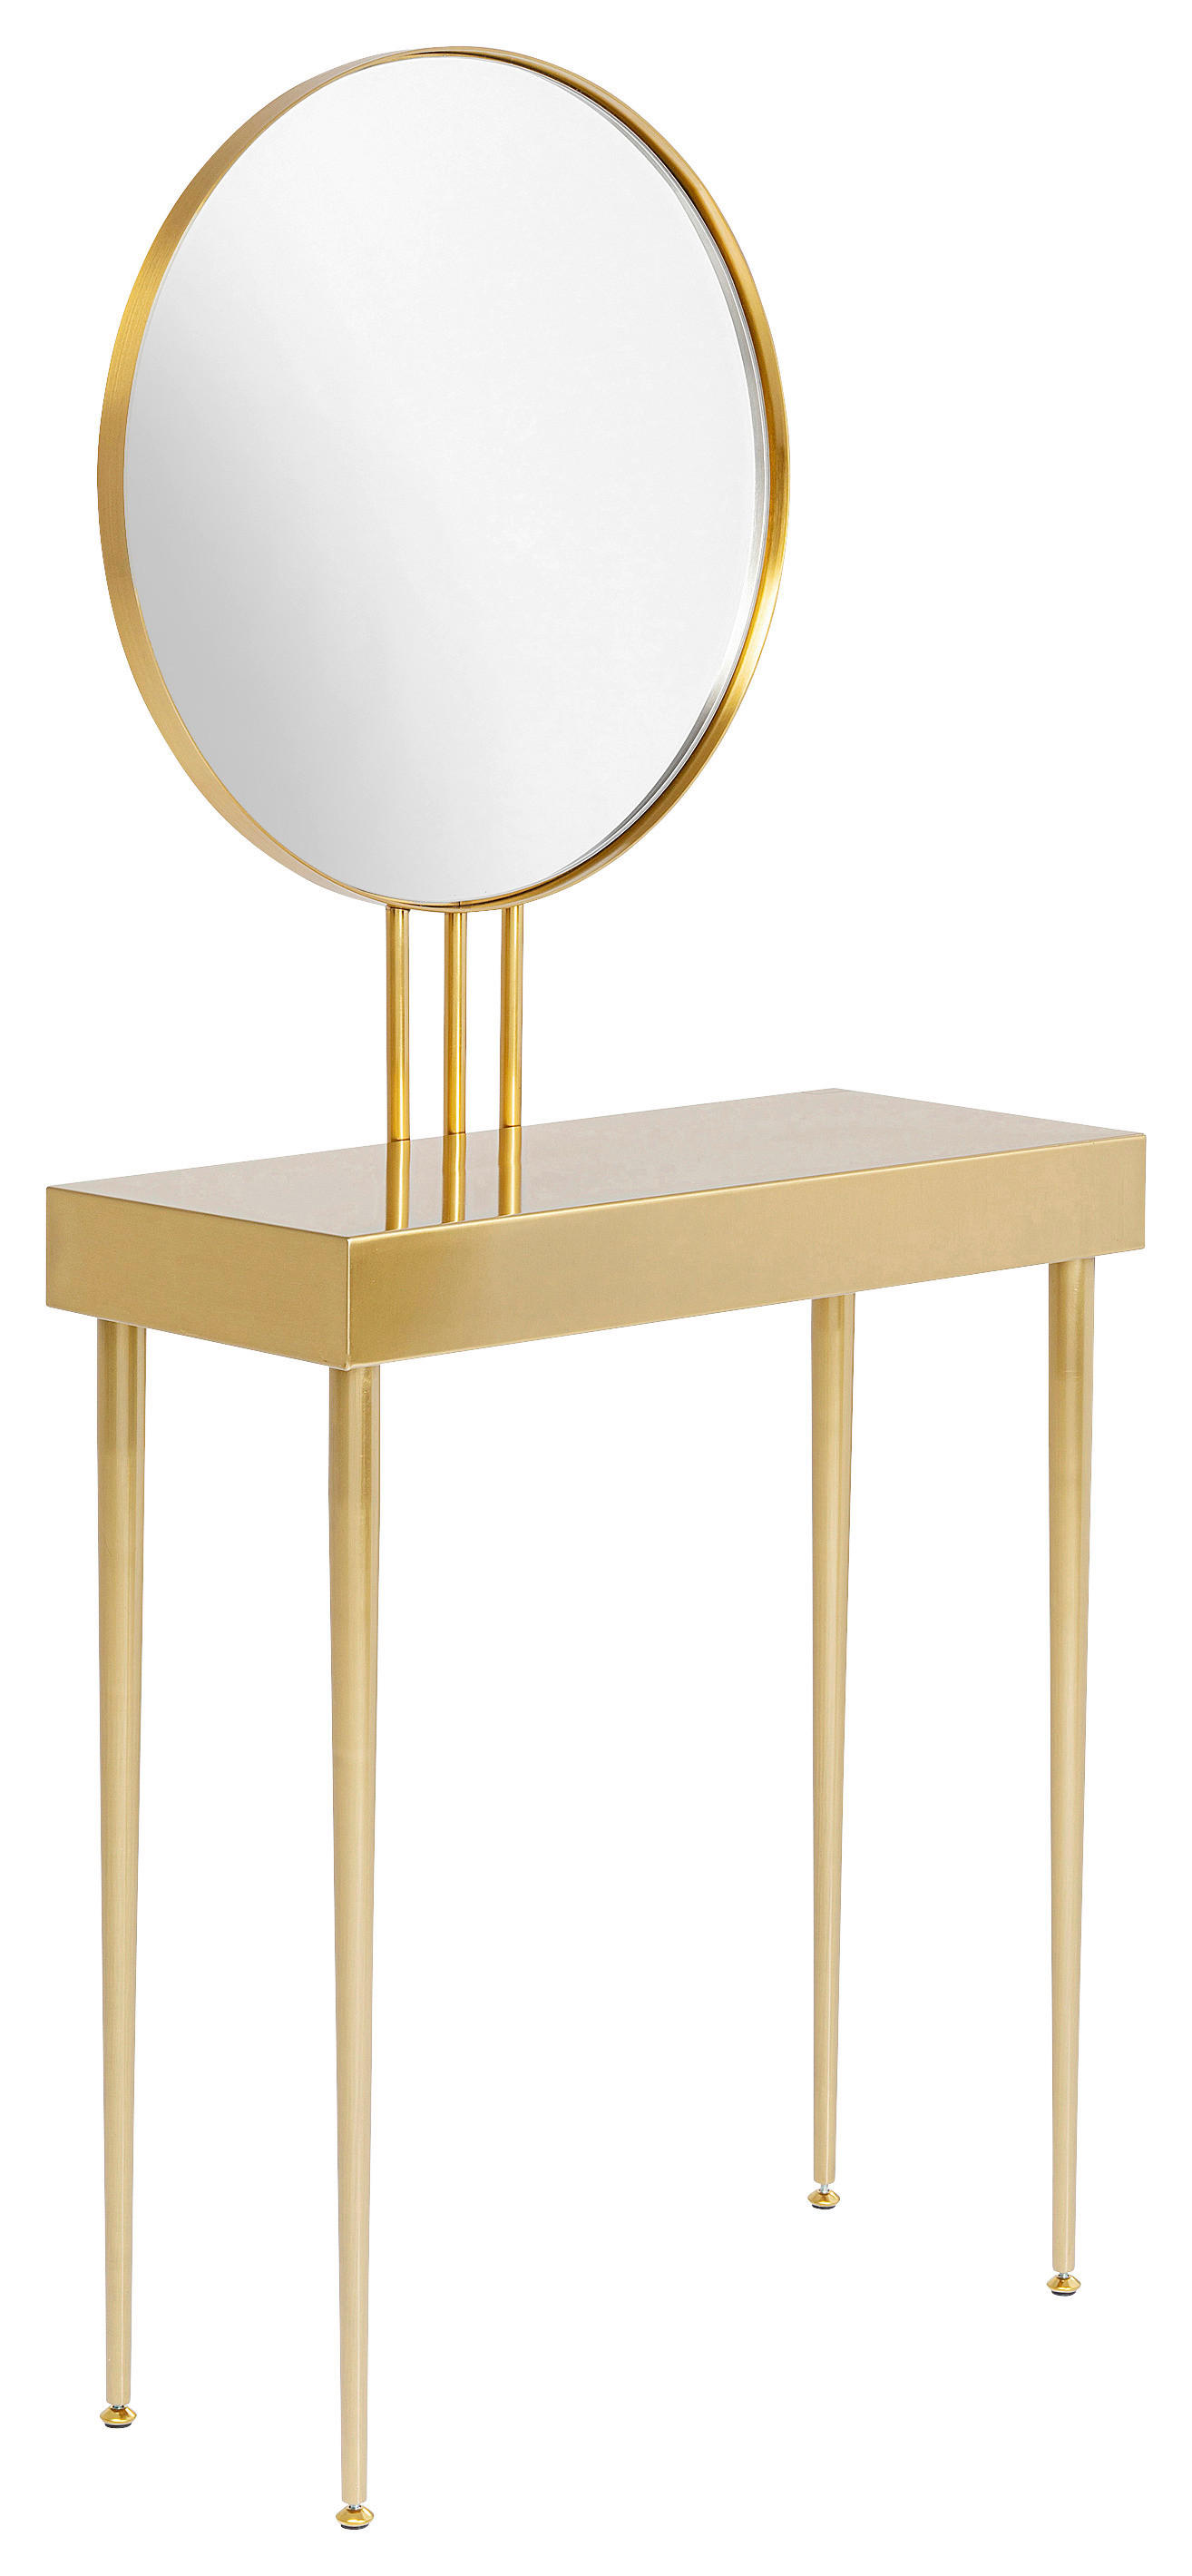 SCHMINKTISCH Goldfarben  - Goldfarben, Design, Glas/Metall (70/32/153cm) - Kare-Design